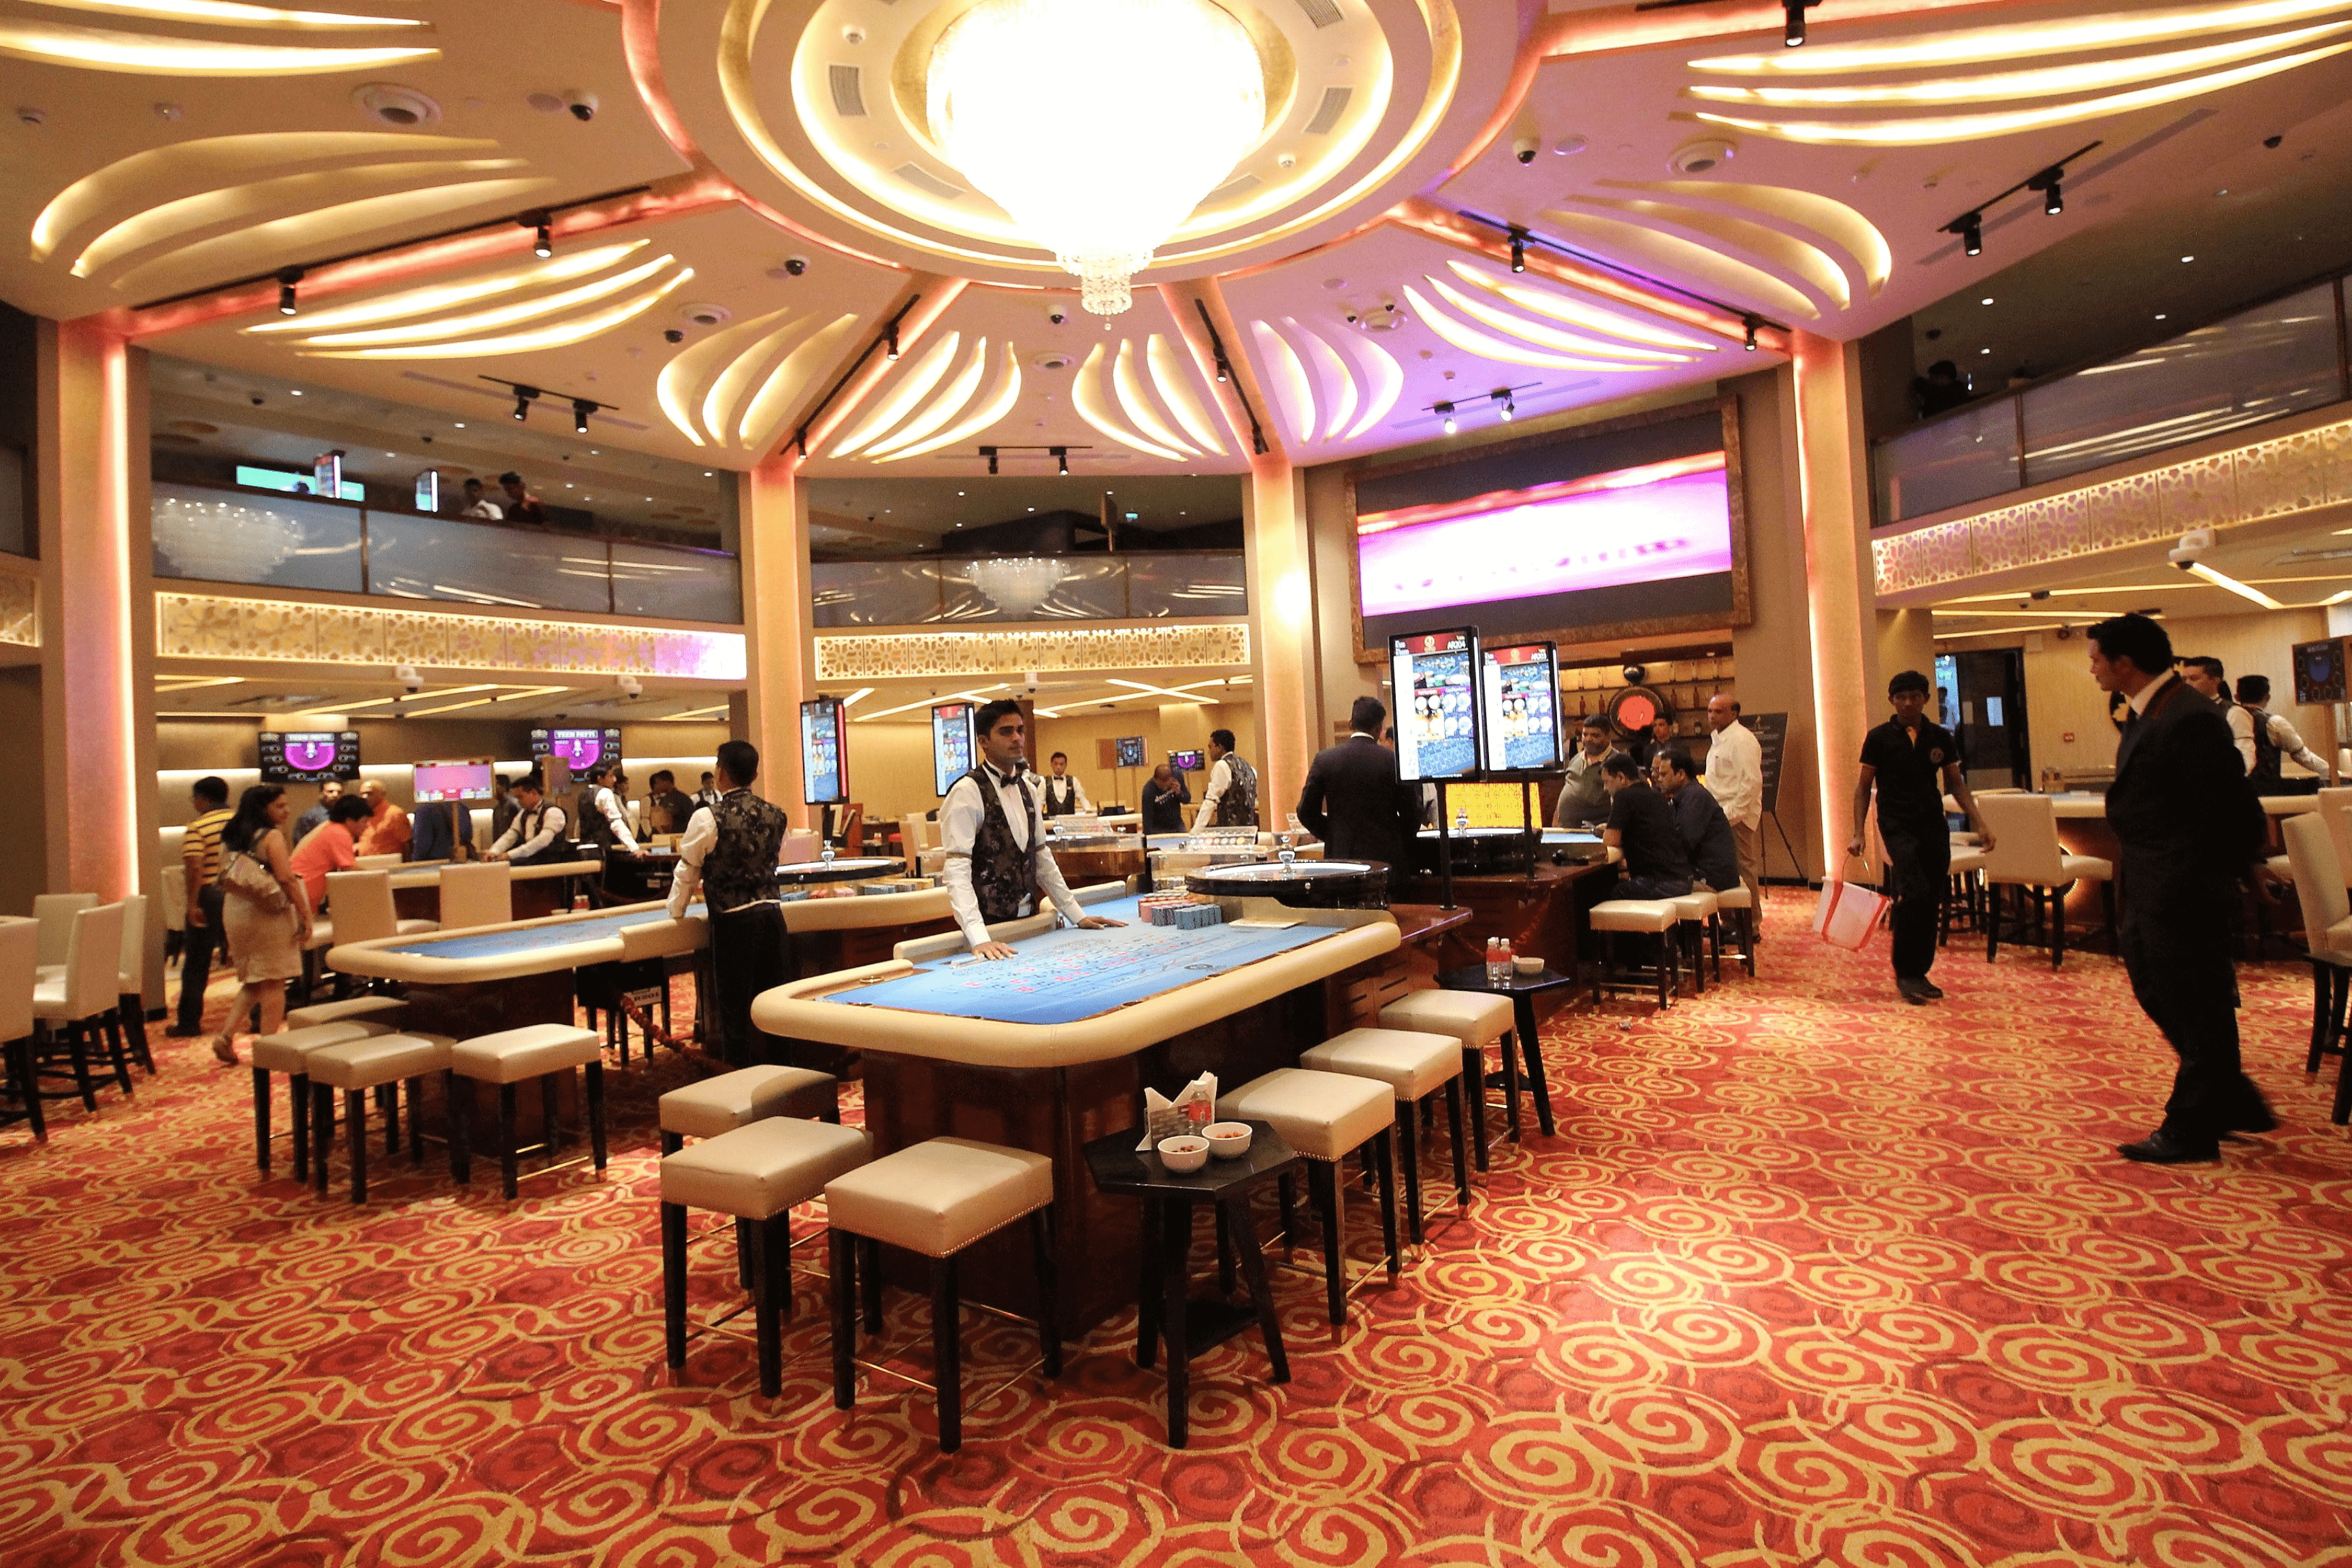 best live casino india